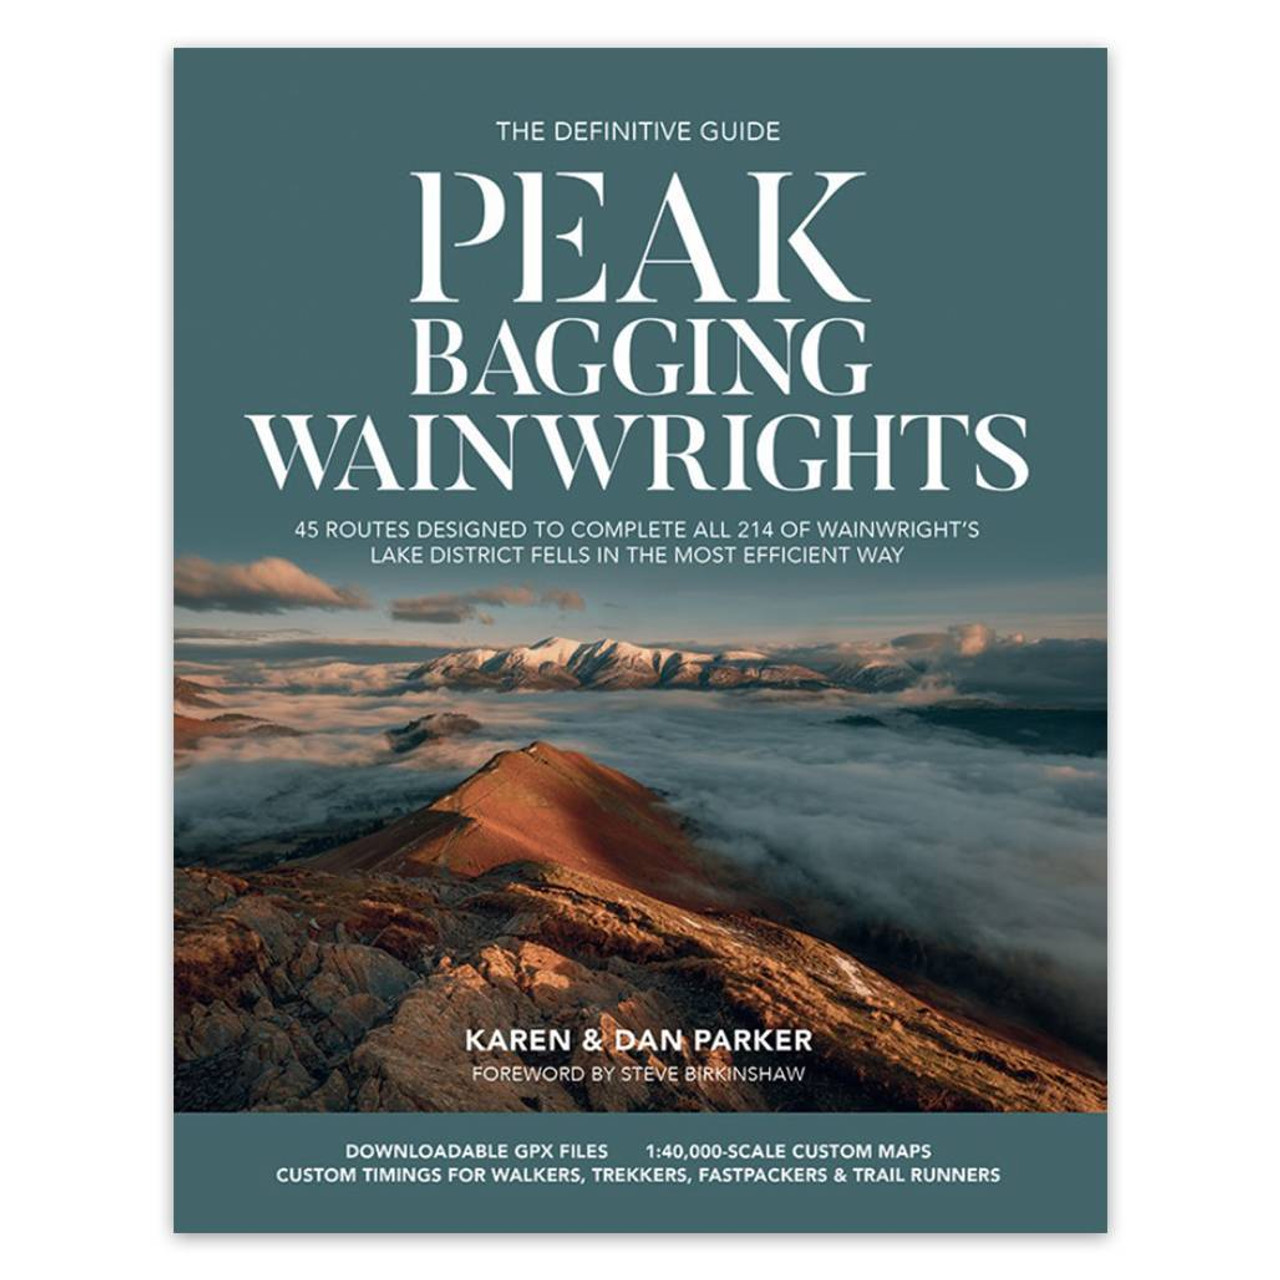 Peak Bagging: Wainwrights